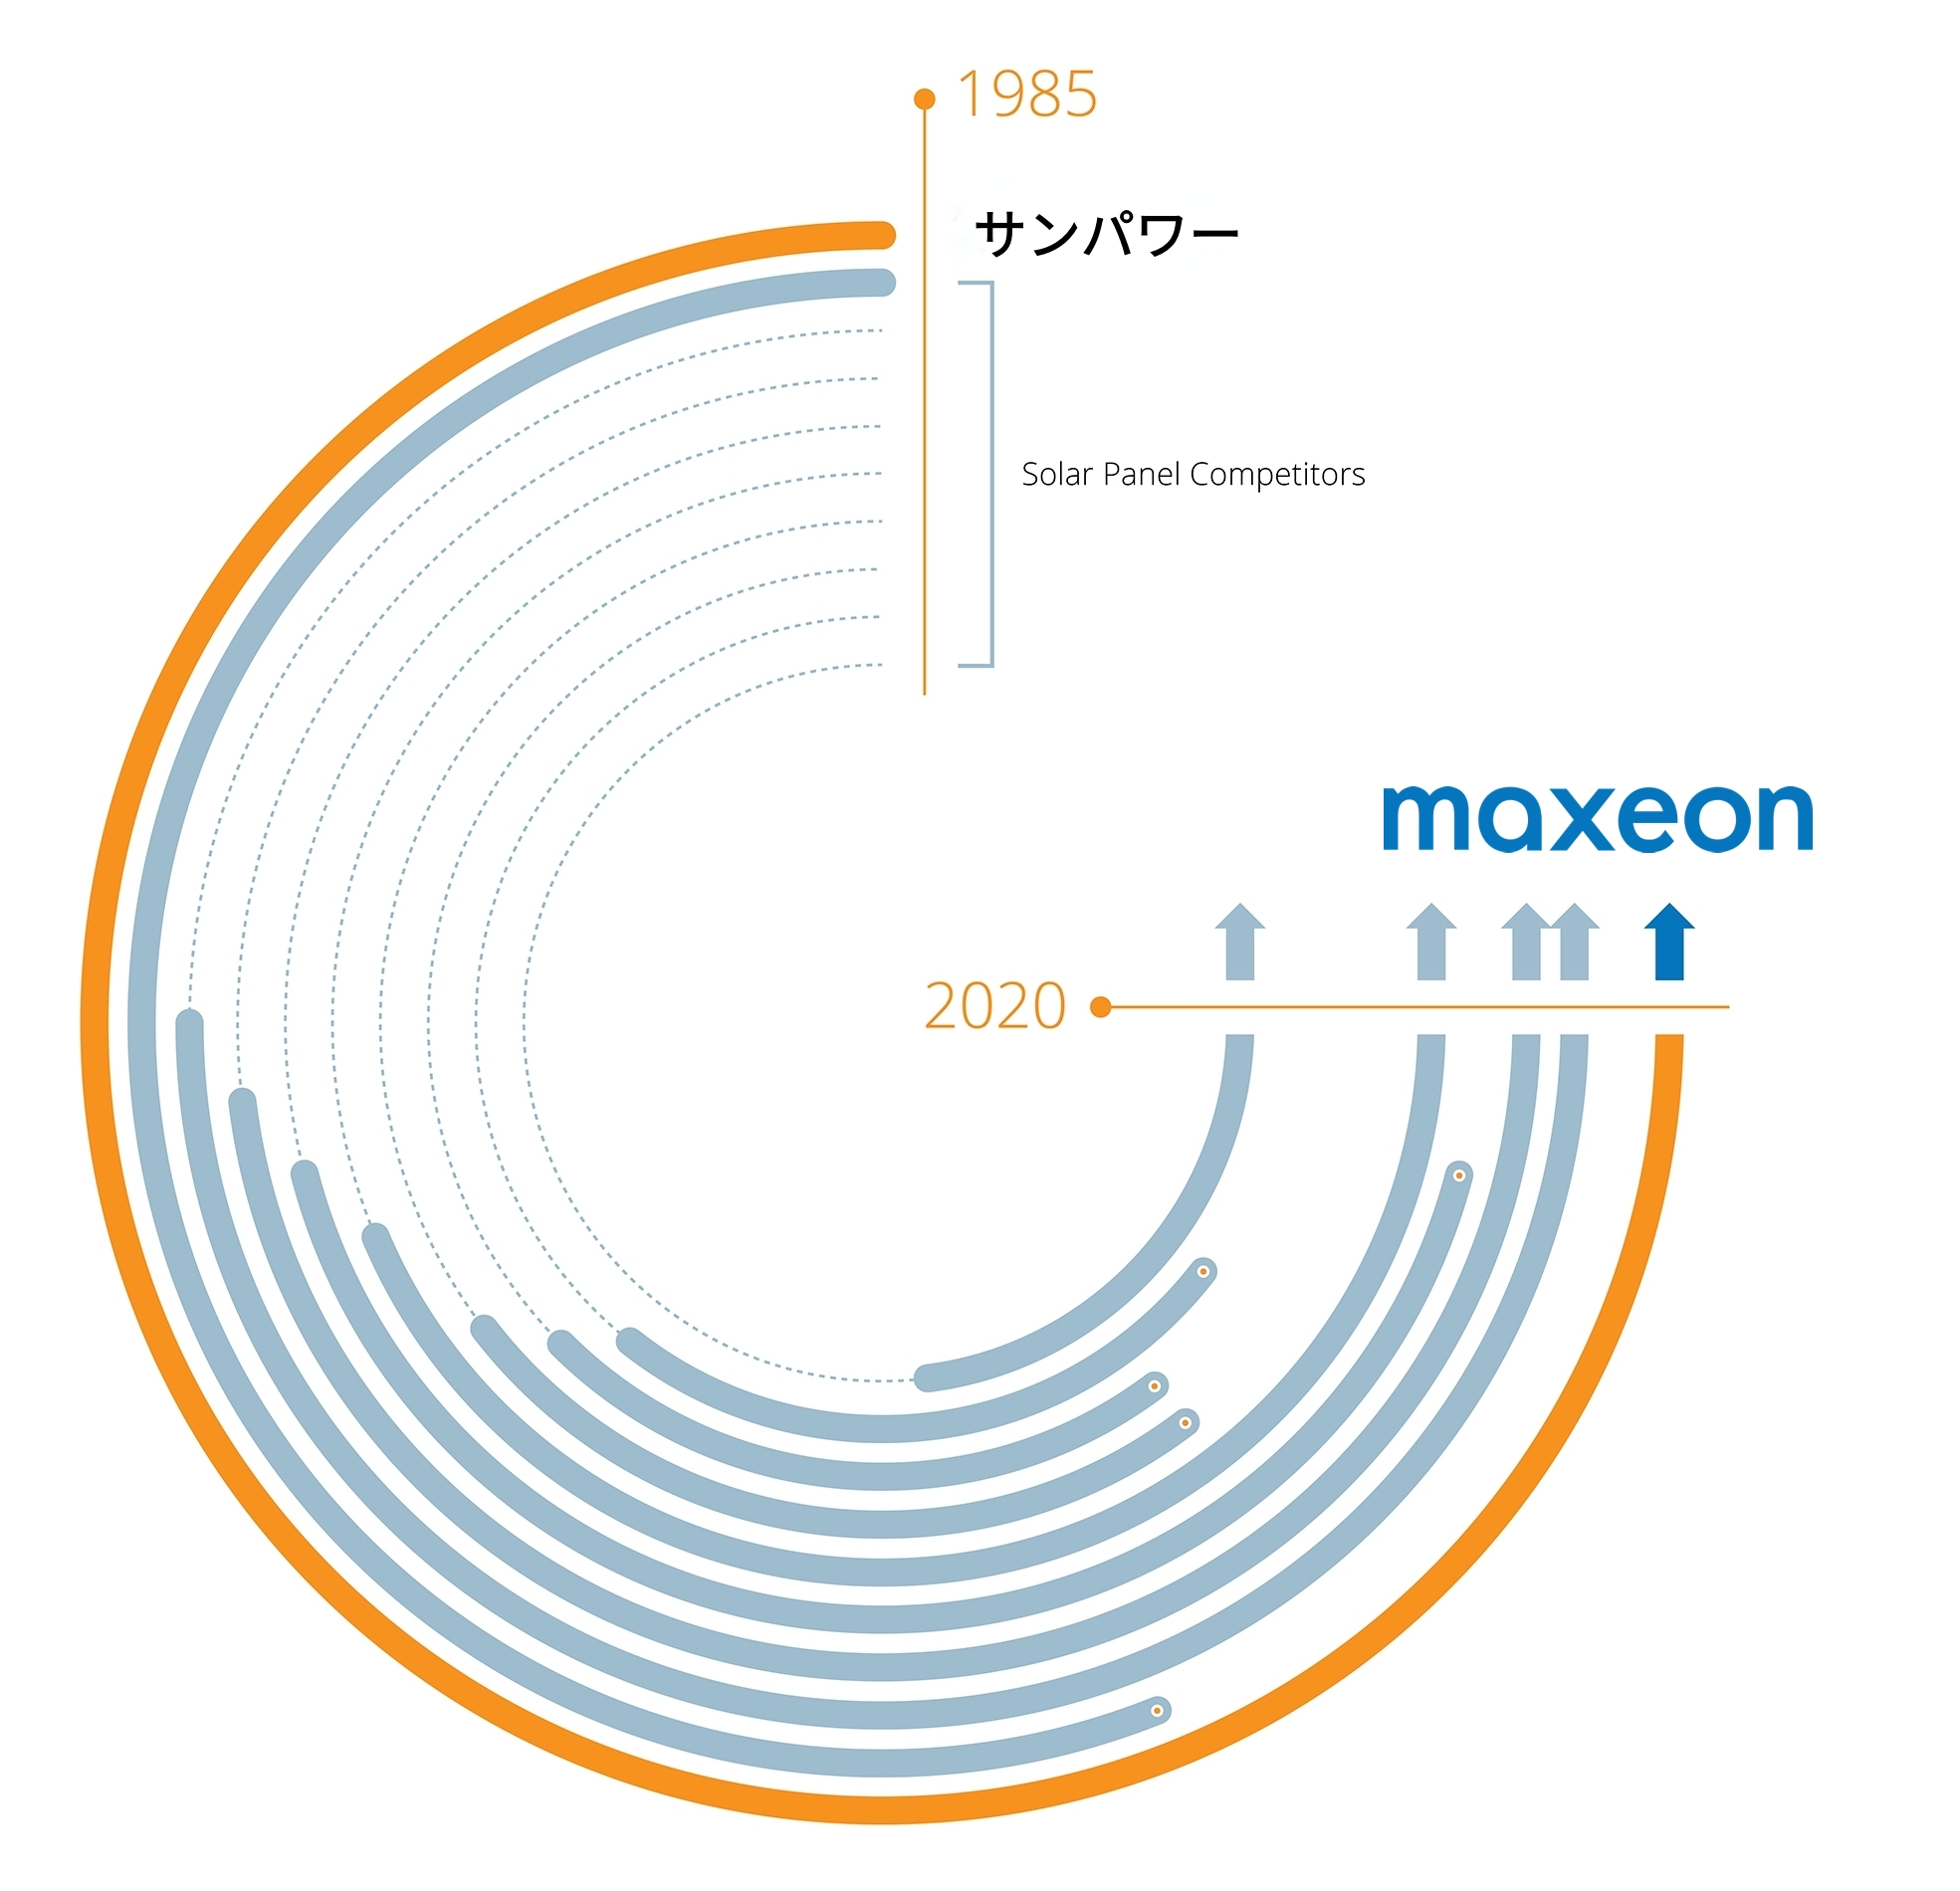 サンパワー - Maxeon太陽光発電テクノロジー - 競合他社と比較したタイムライングラフ